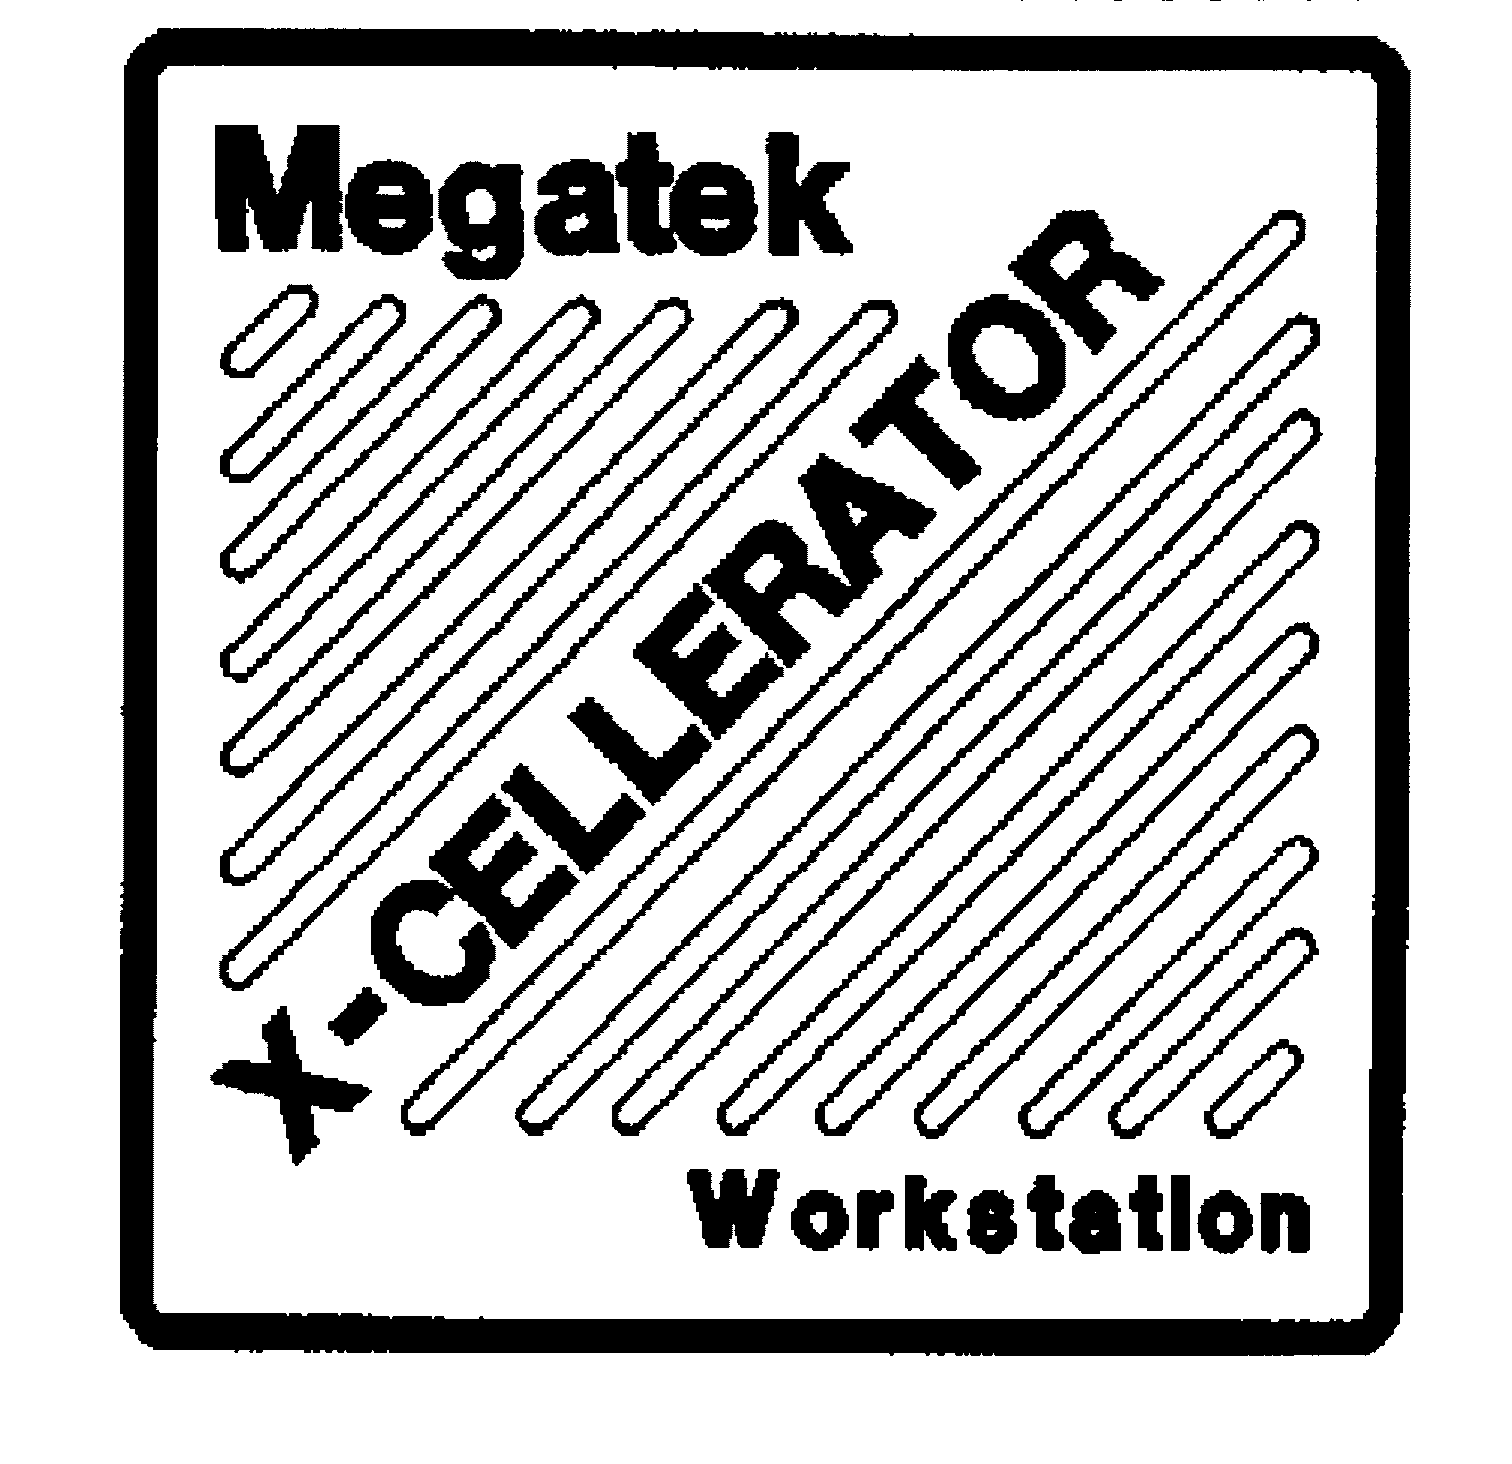  MEGATEK X-CELLERATOR WORKSTATION